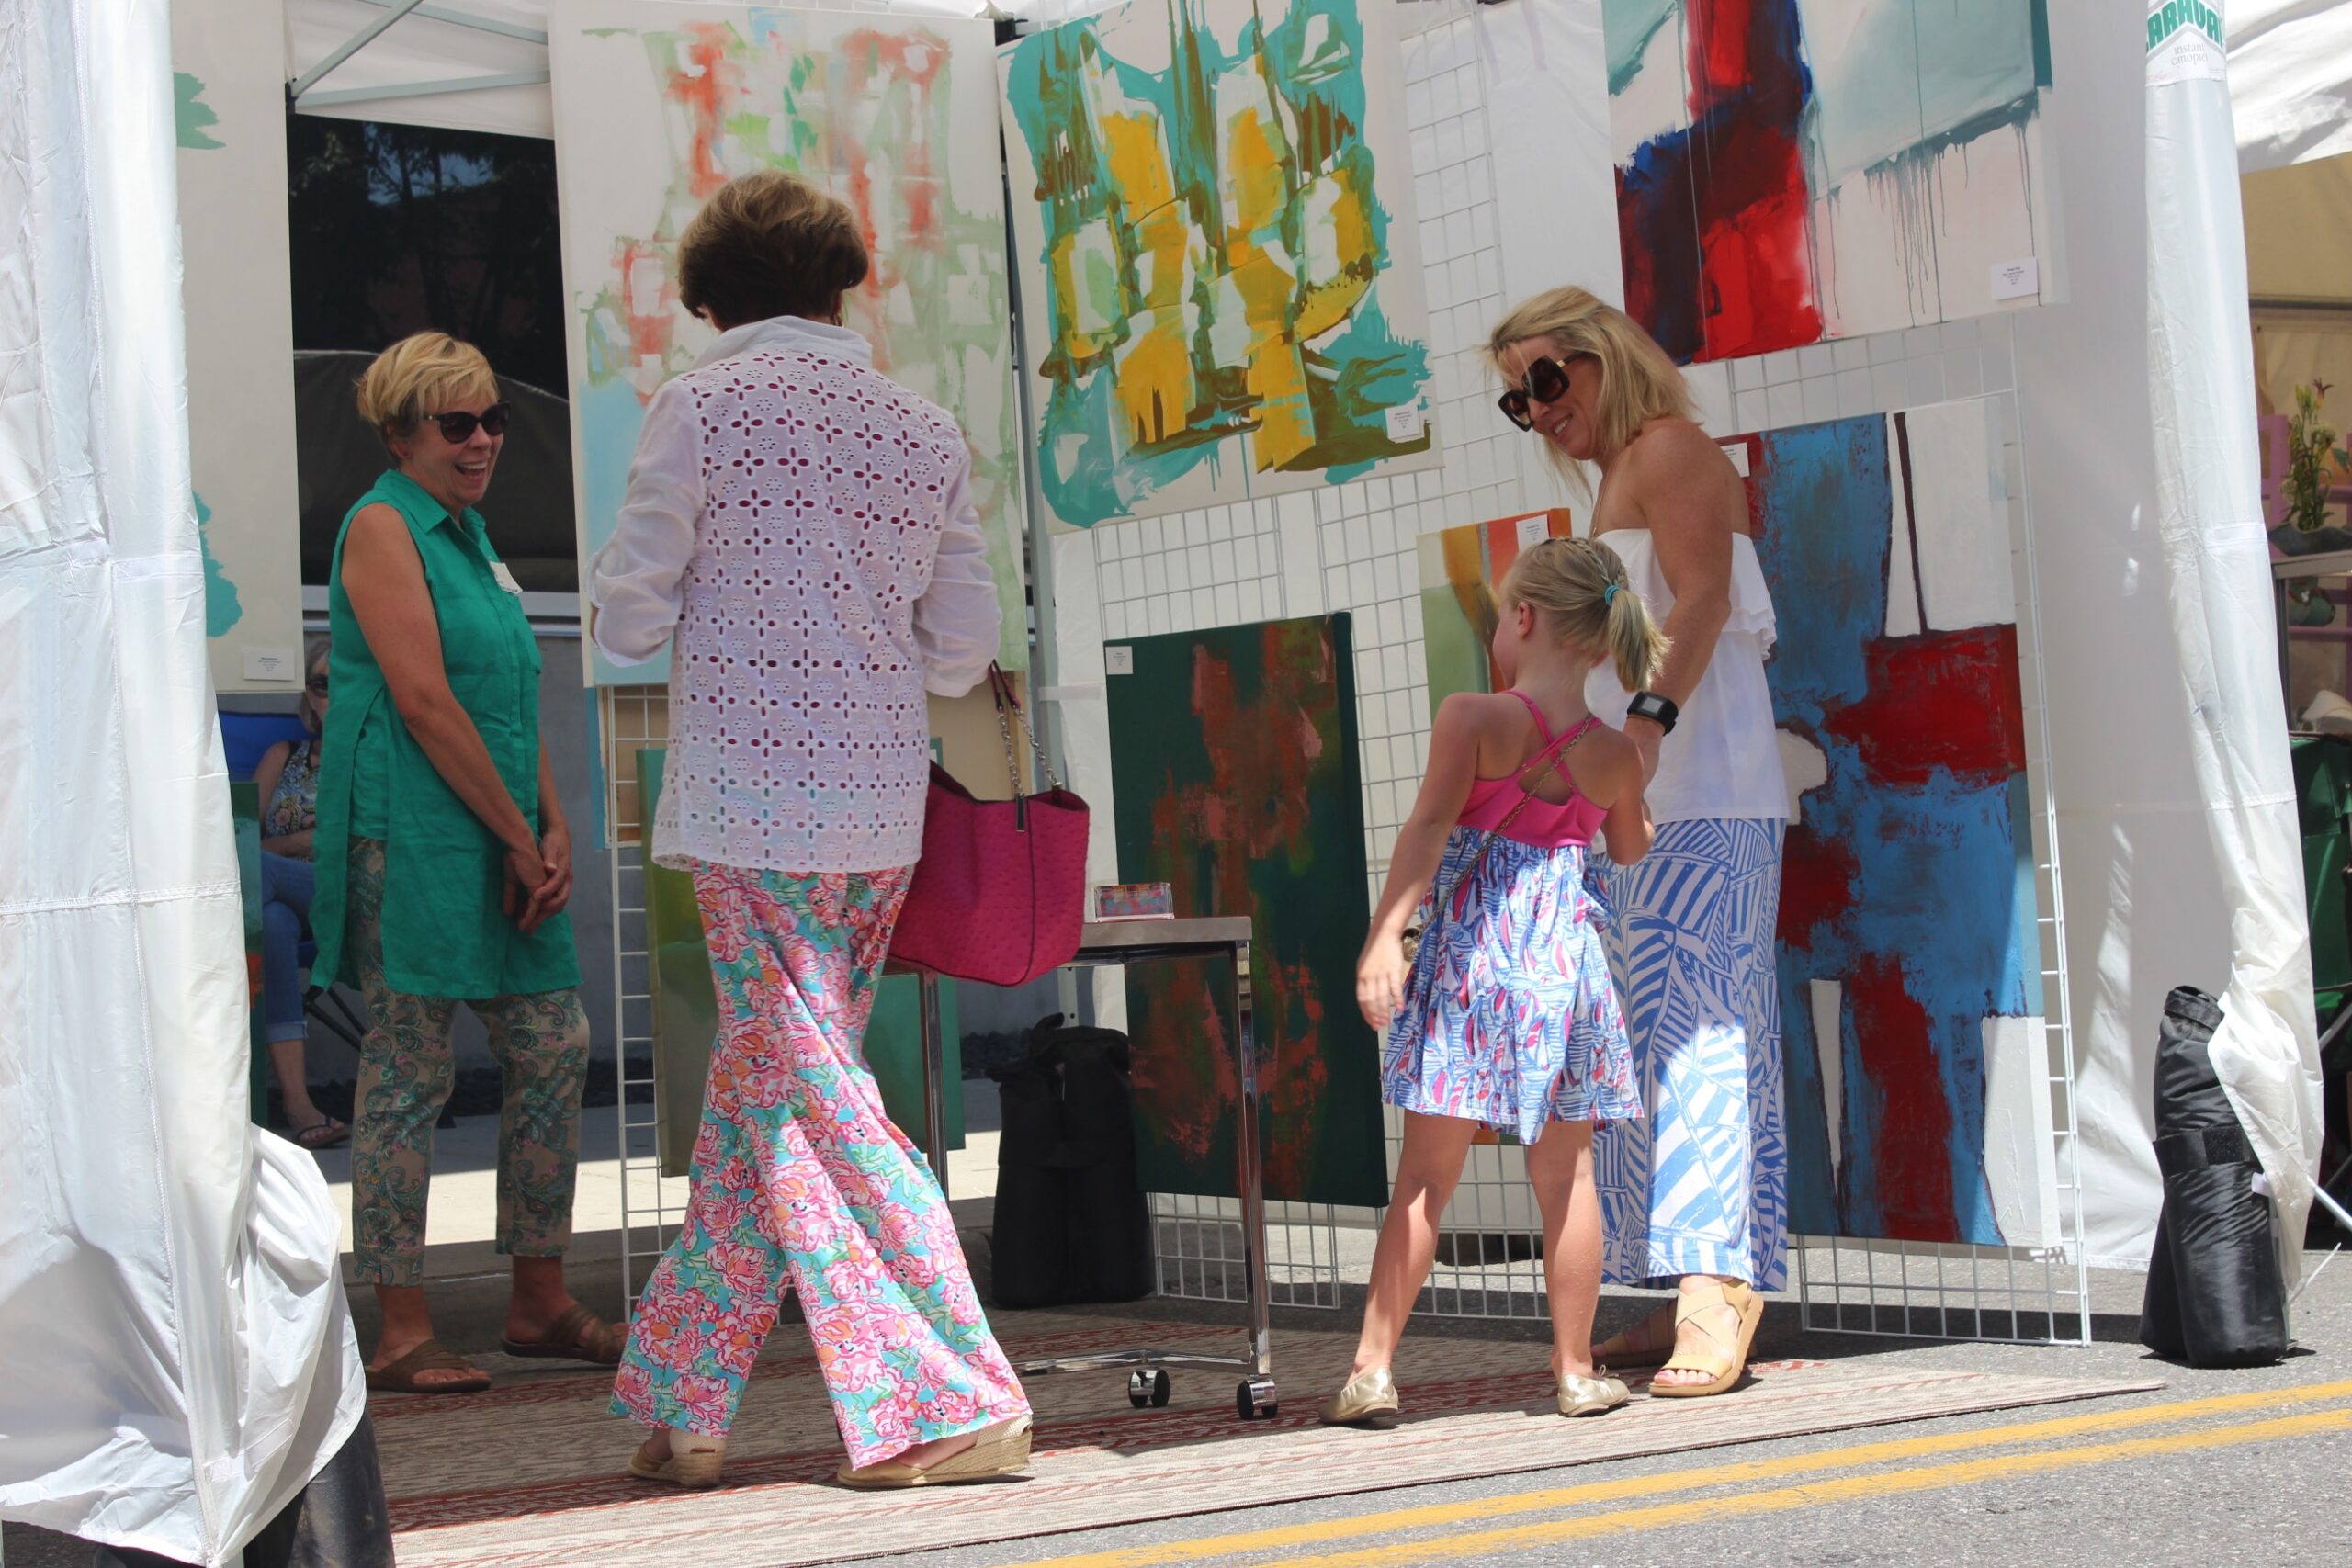 66th Annual Sidewalk Art Show – Sunday